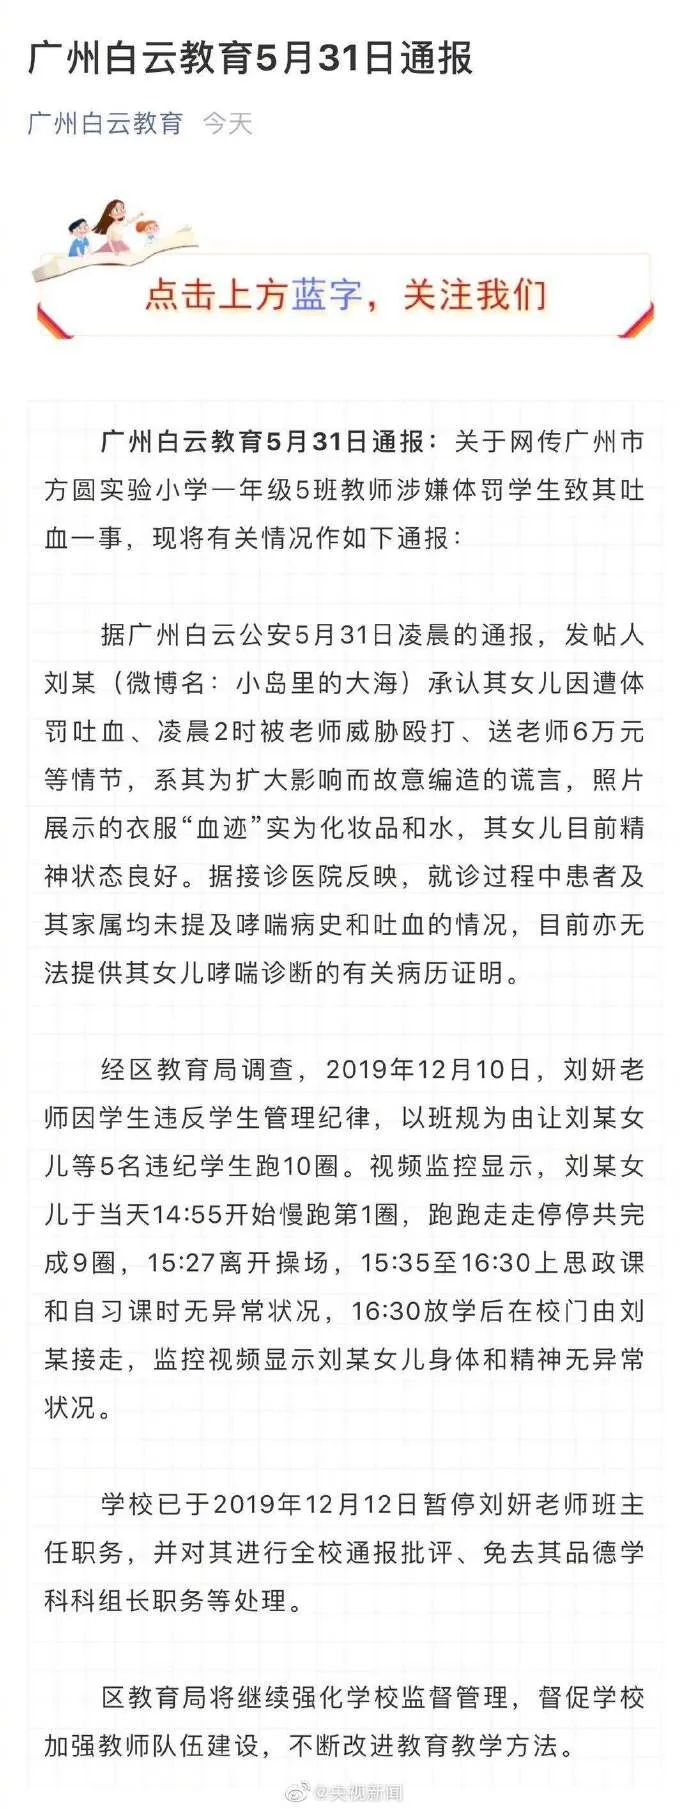 体罚老师已停职 广州教育局通报 造谣家长的女儿确被罚跑操场10圈